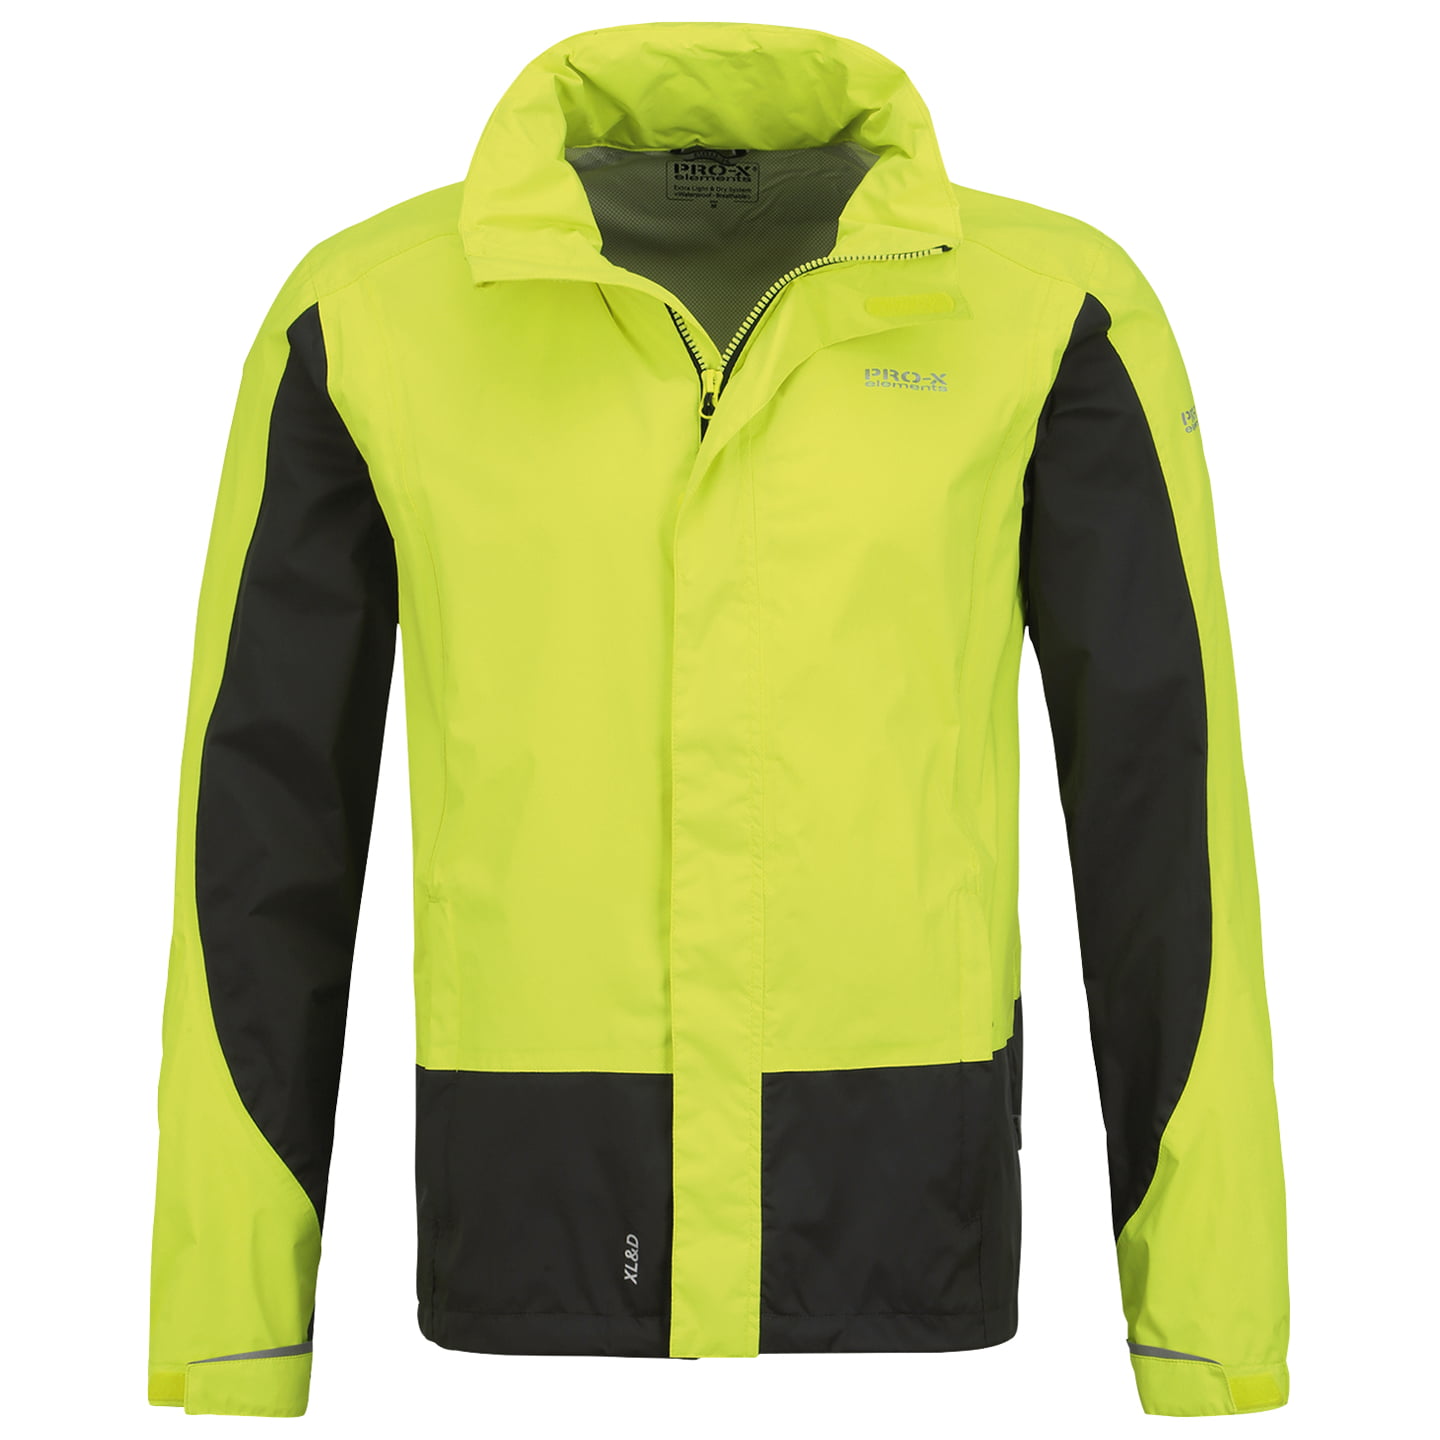 PRO-X Lennard Waterproof Jacket, for men, size L, Cycle jacket, Rainwear